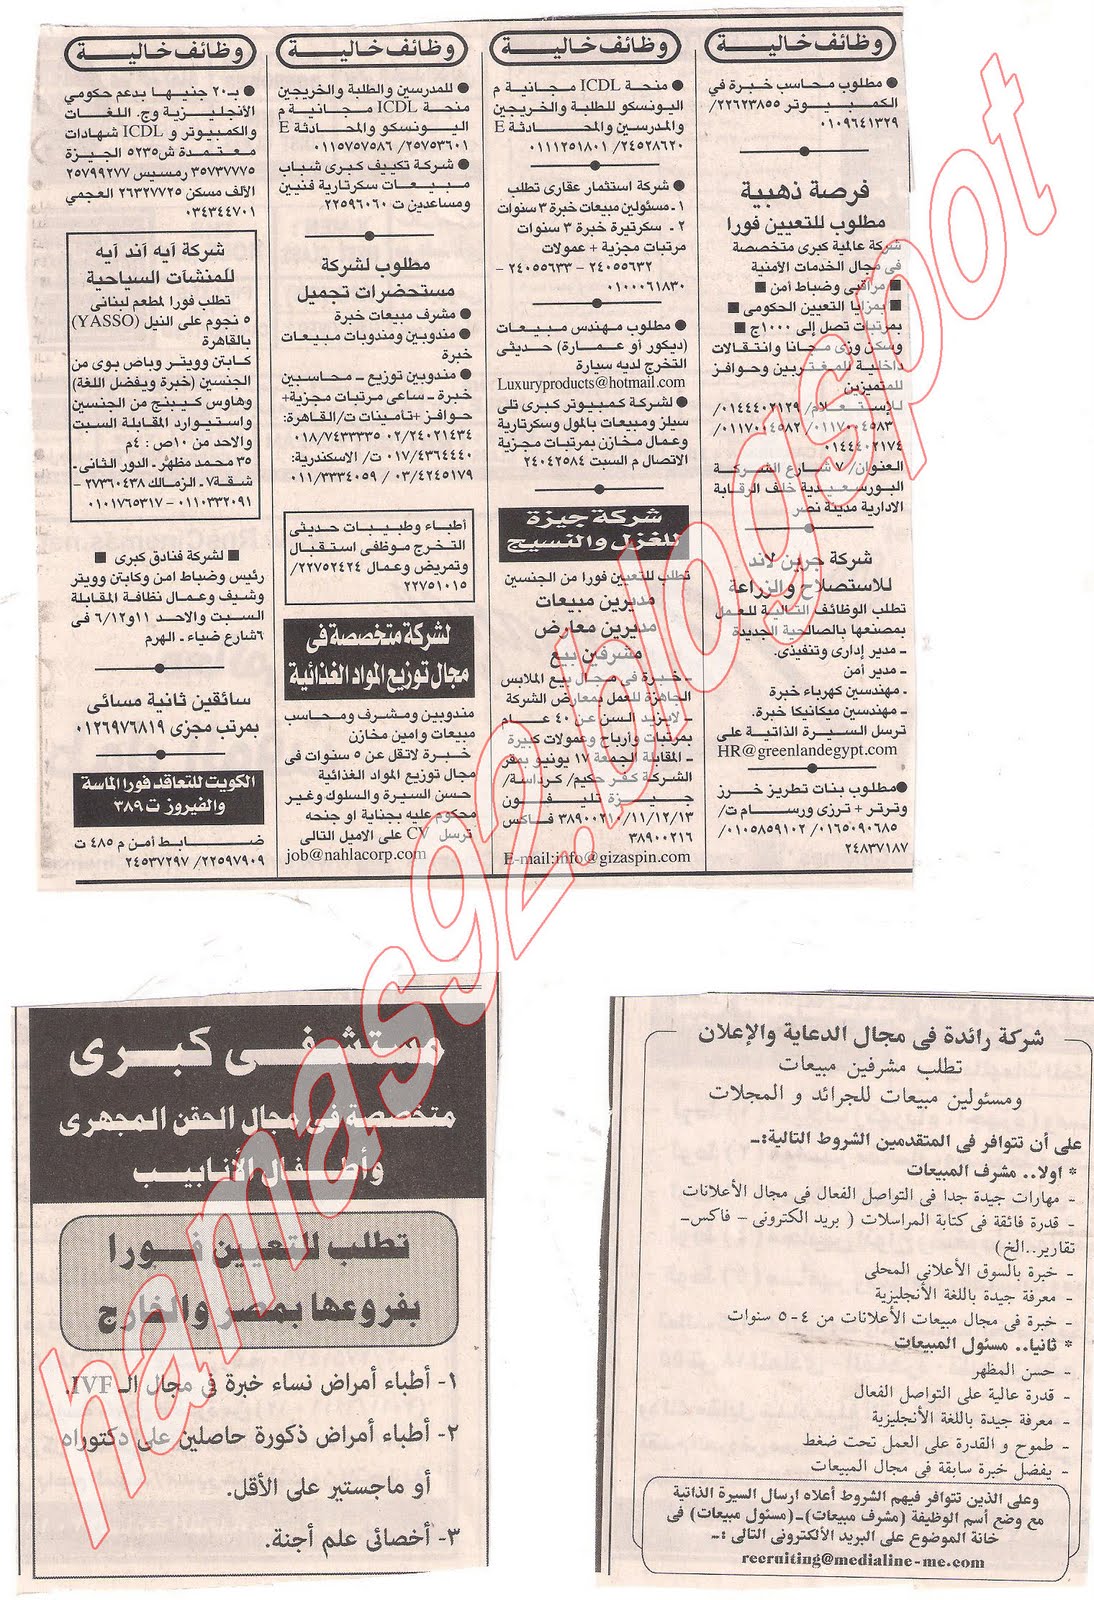 وظائف اهرام الجمعة 10 يونيو 2011 - الجزء الثانى Picture+009